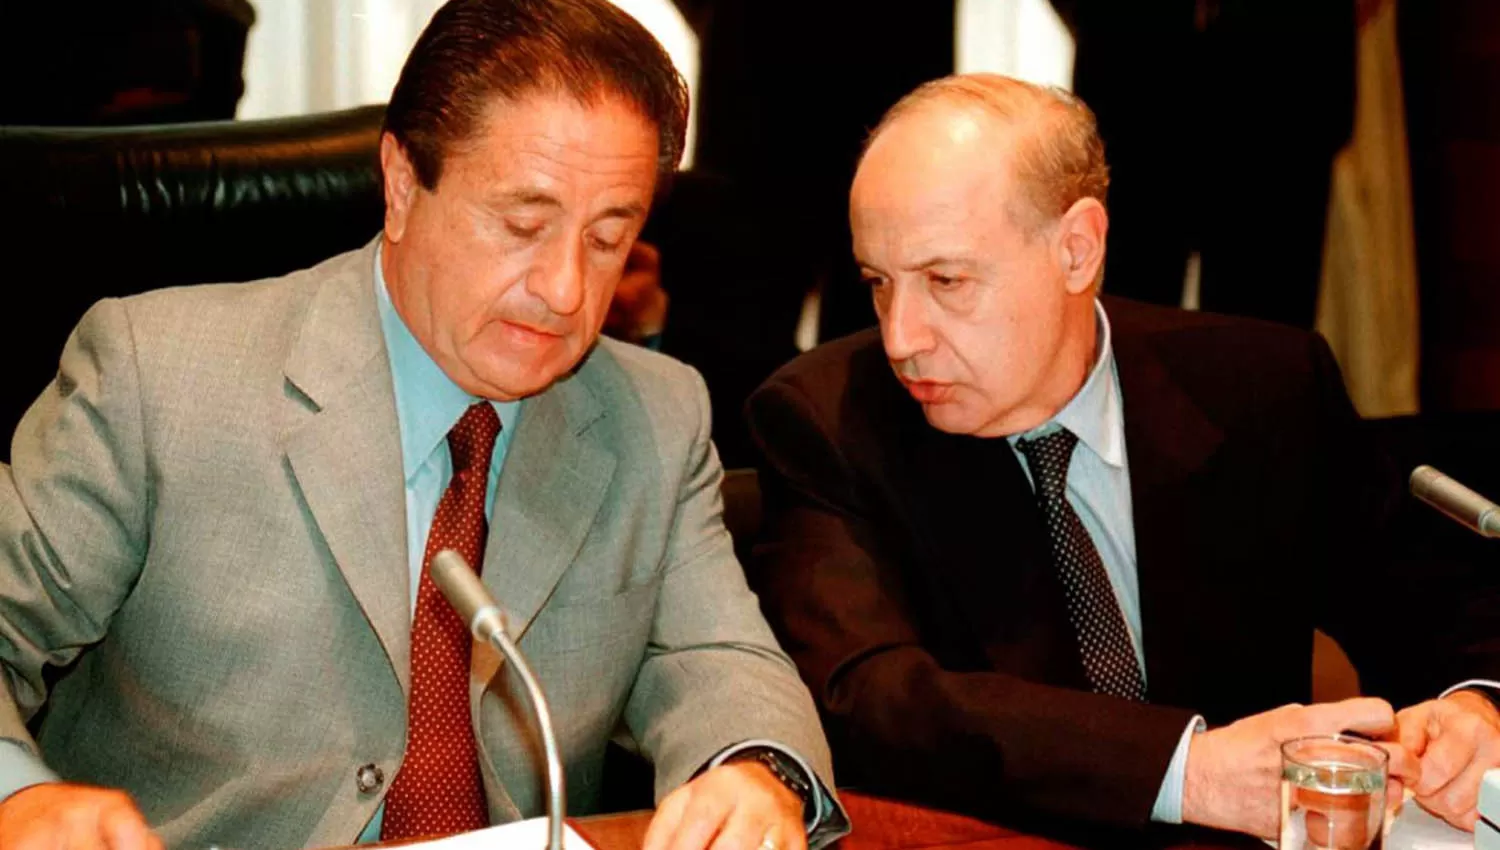 VIEJOS CONOCIDOS. Roberto Lavagna (a la derecha de la imagen) fue ministro de Economía de Duhalde entre 2002 y 2003.